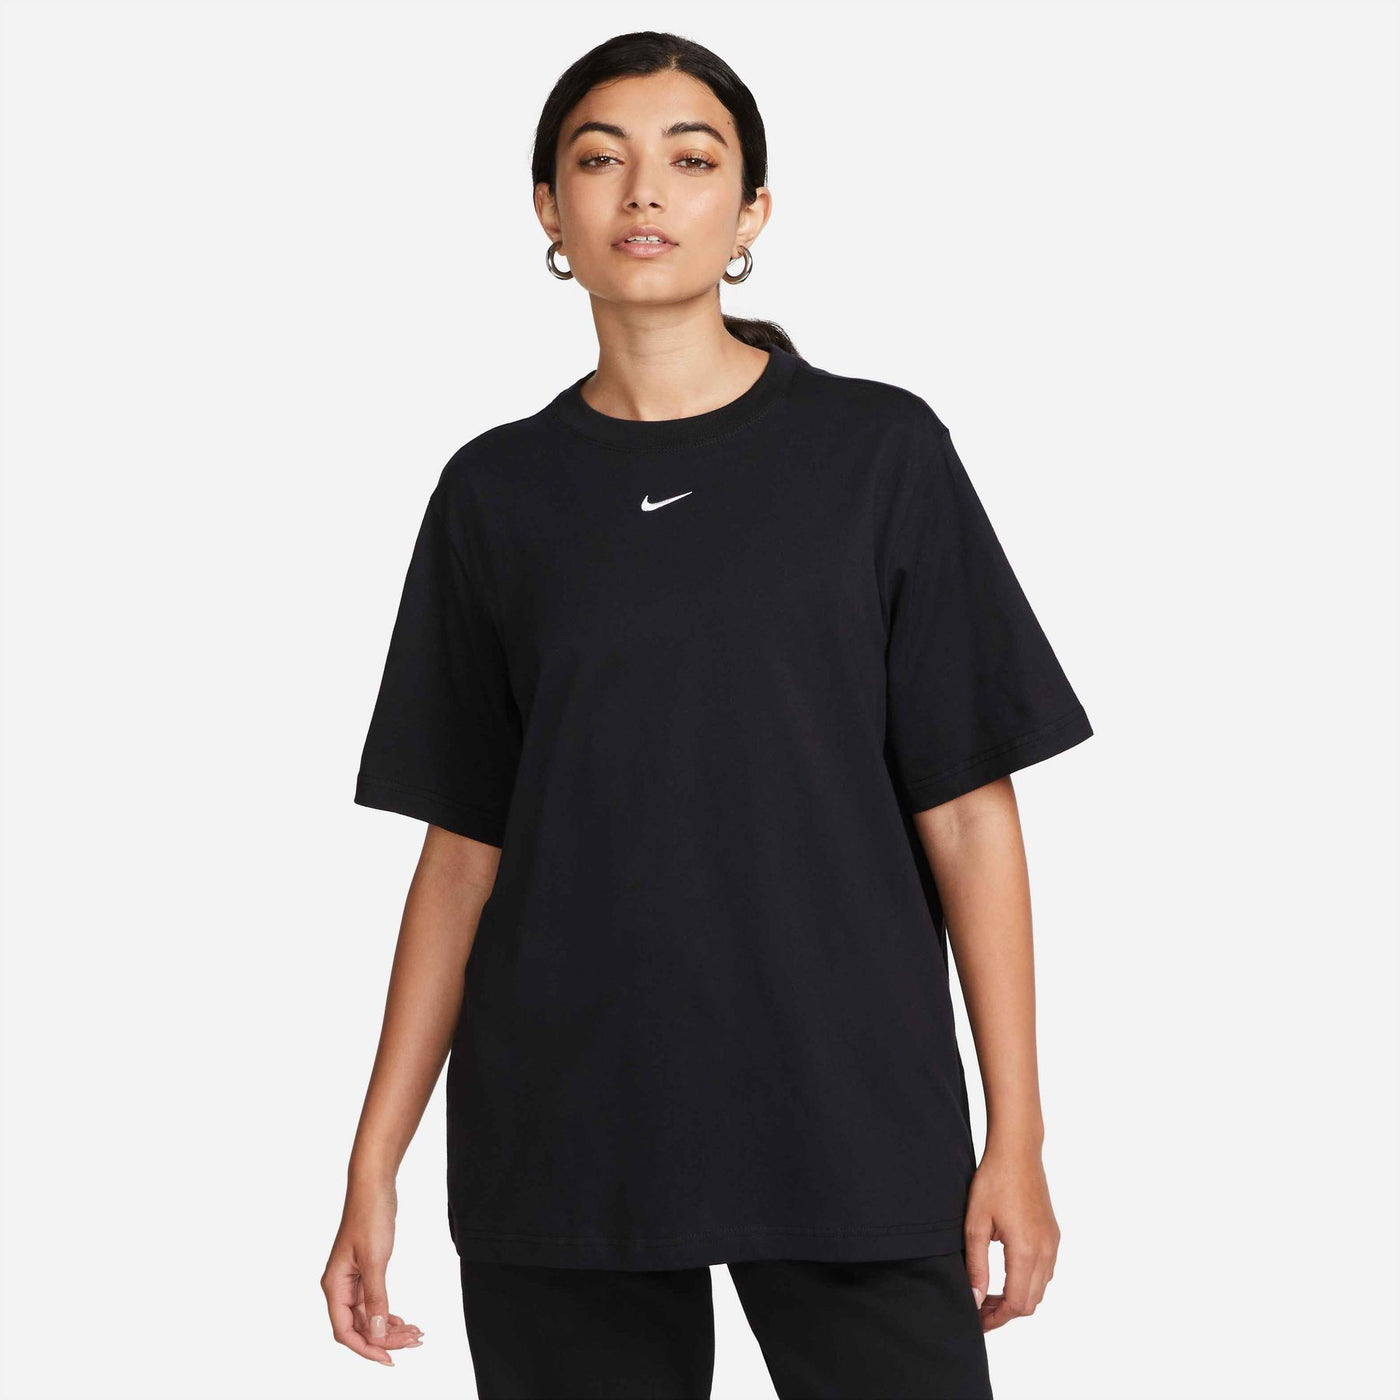 FD4149-010 - T-Shirt - Nike